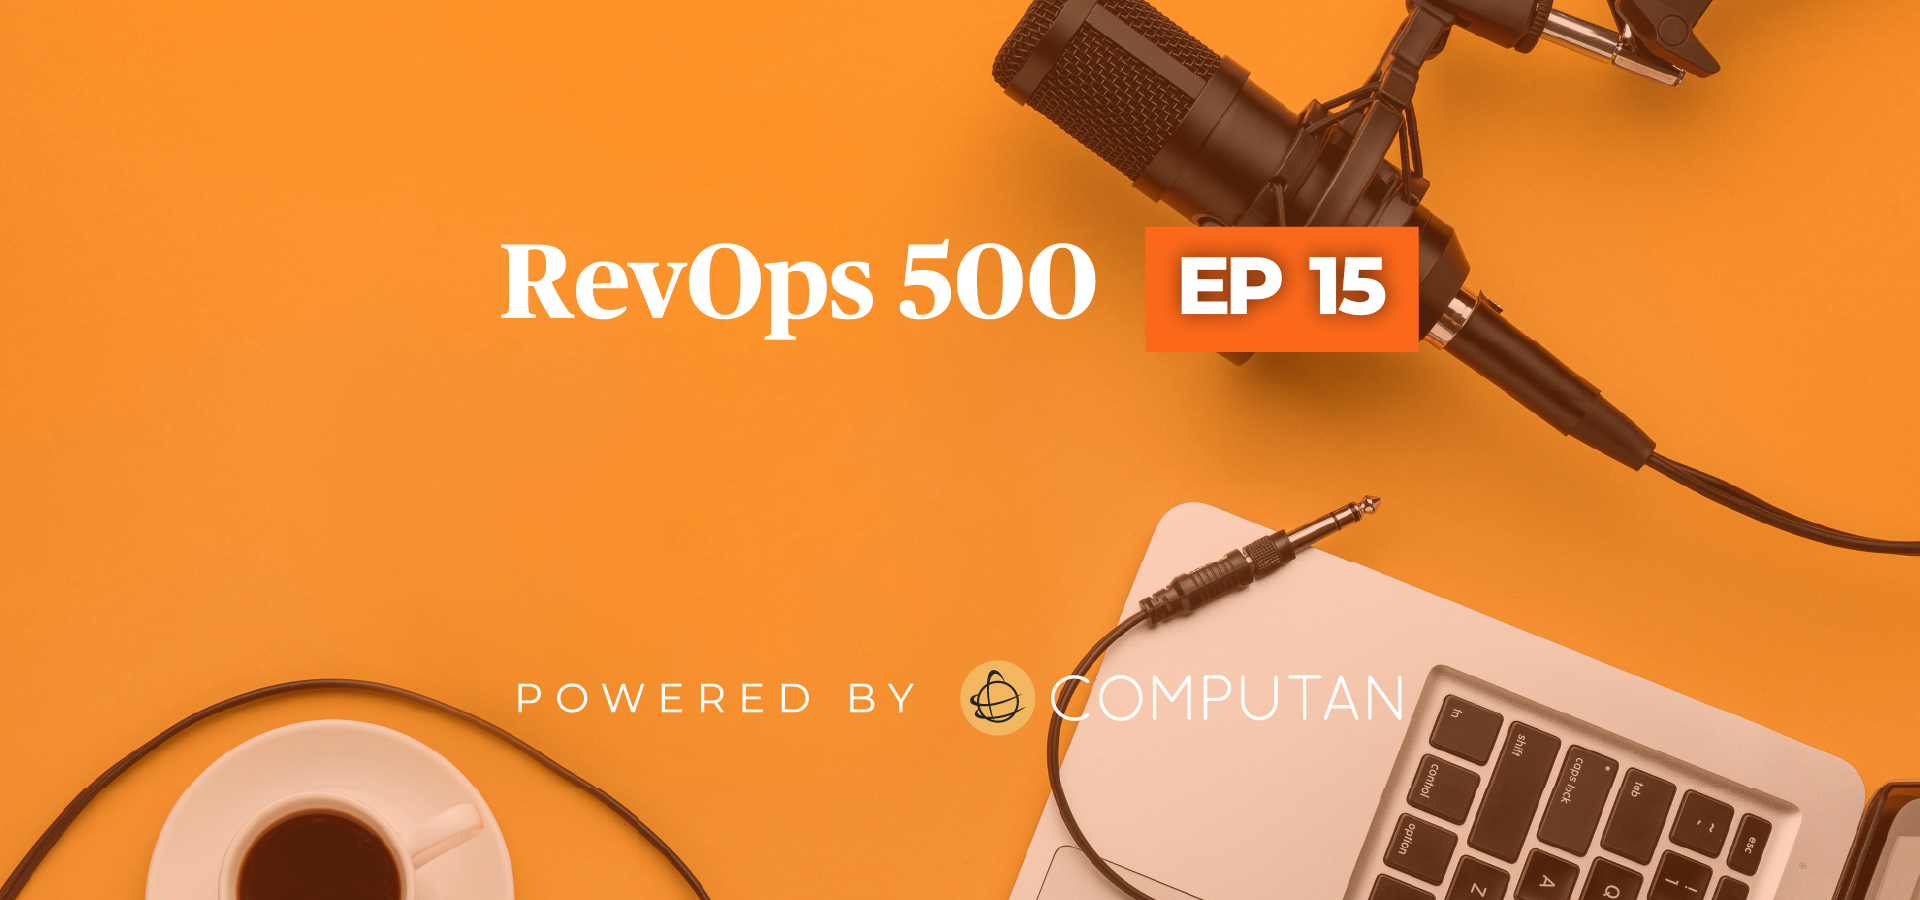 RevOps Episode 15